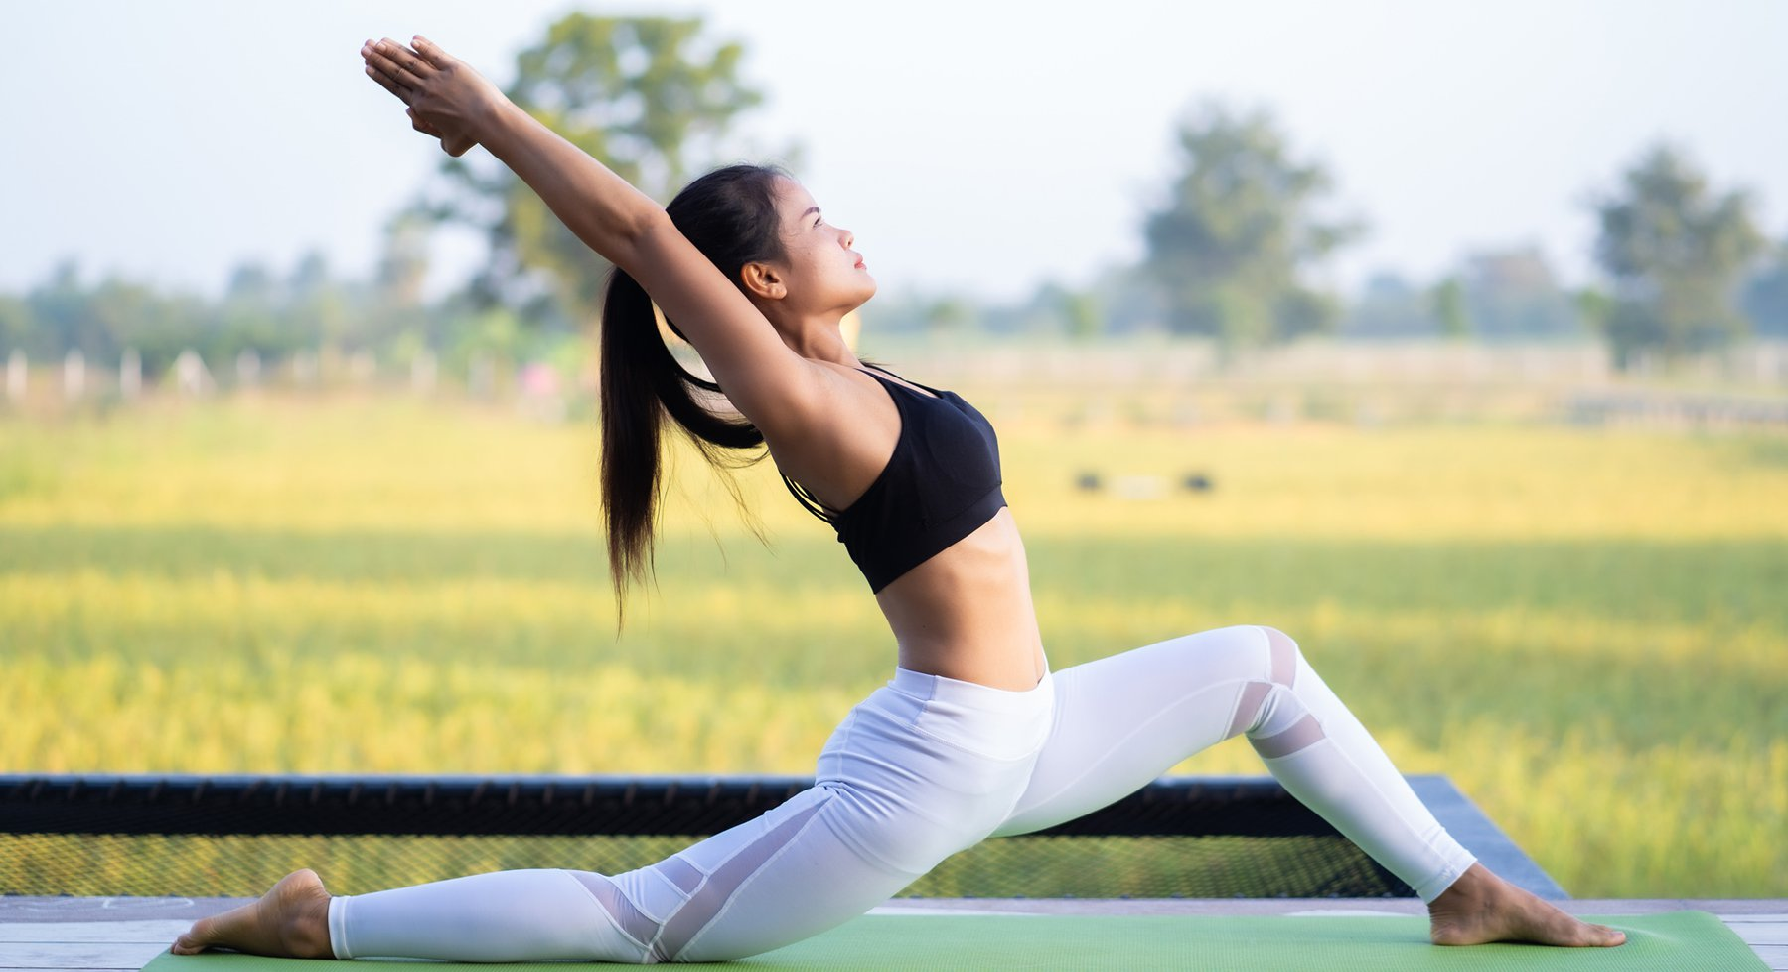 Tập Yoga cực kỳ tốt cho sức khỏe, giúp cơ thể khỏe mạnh, dẻo dai hơn rất nhiều